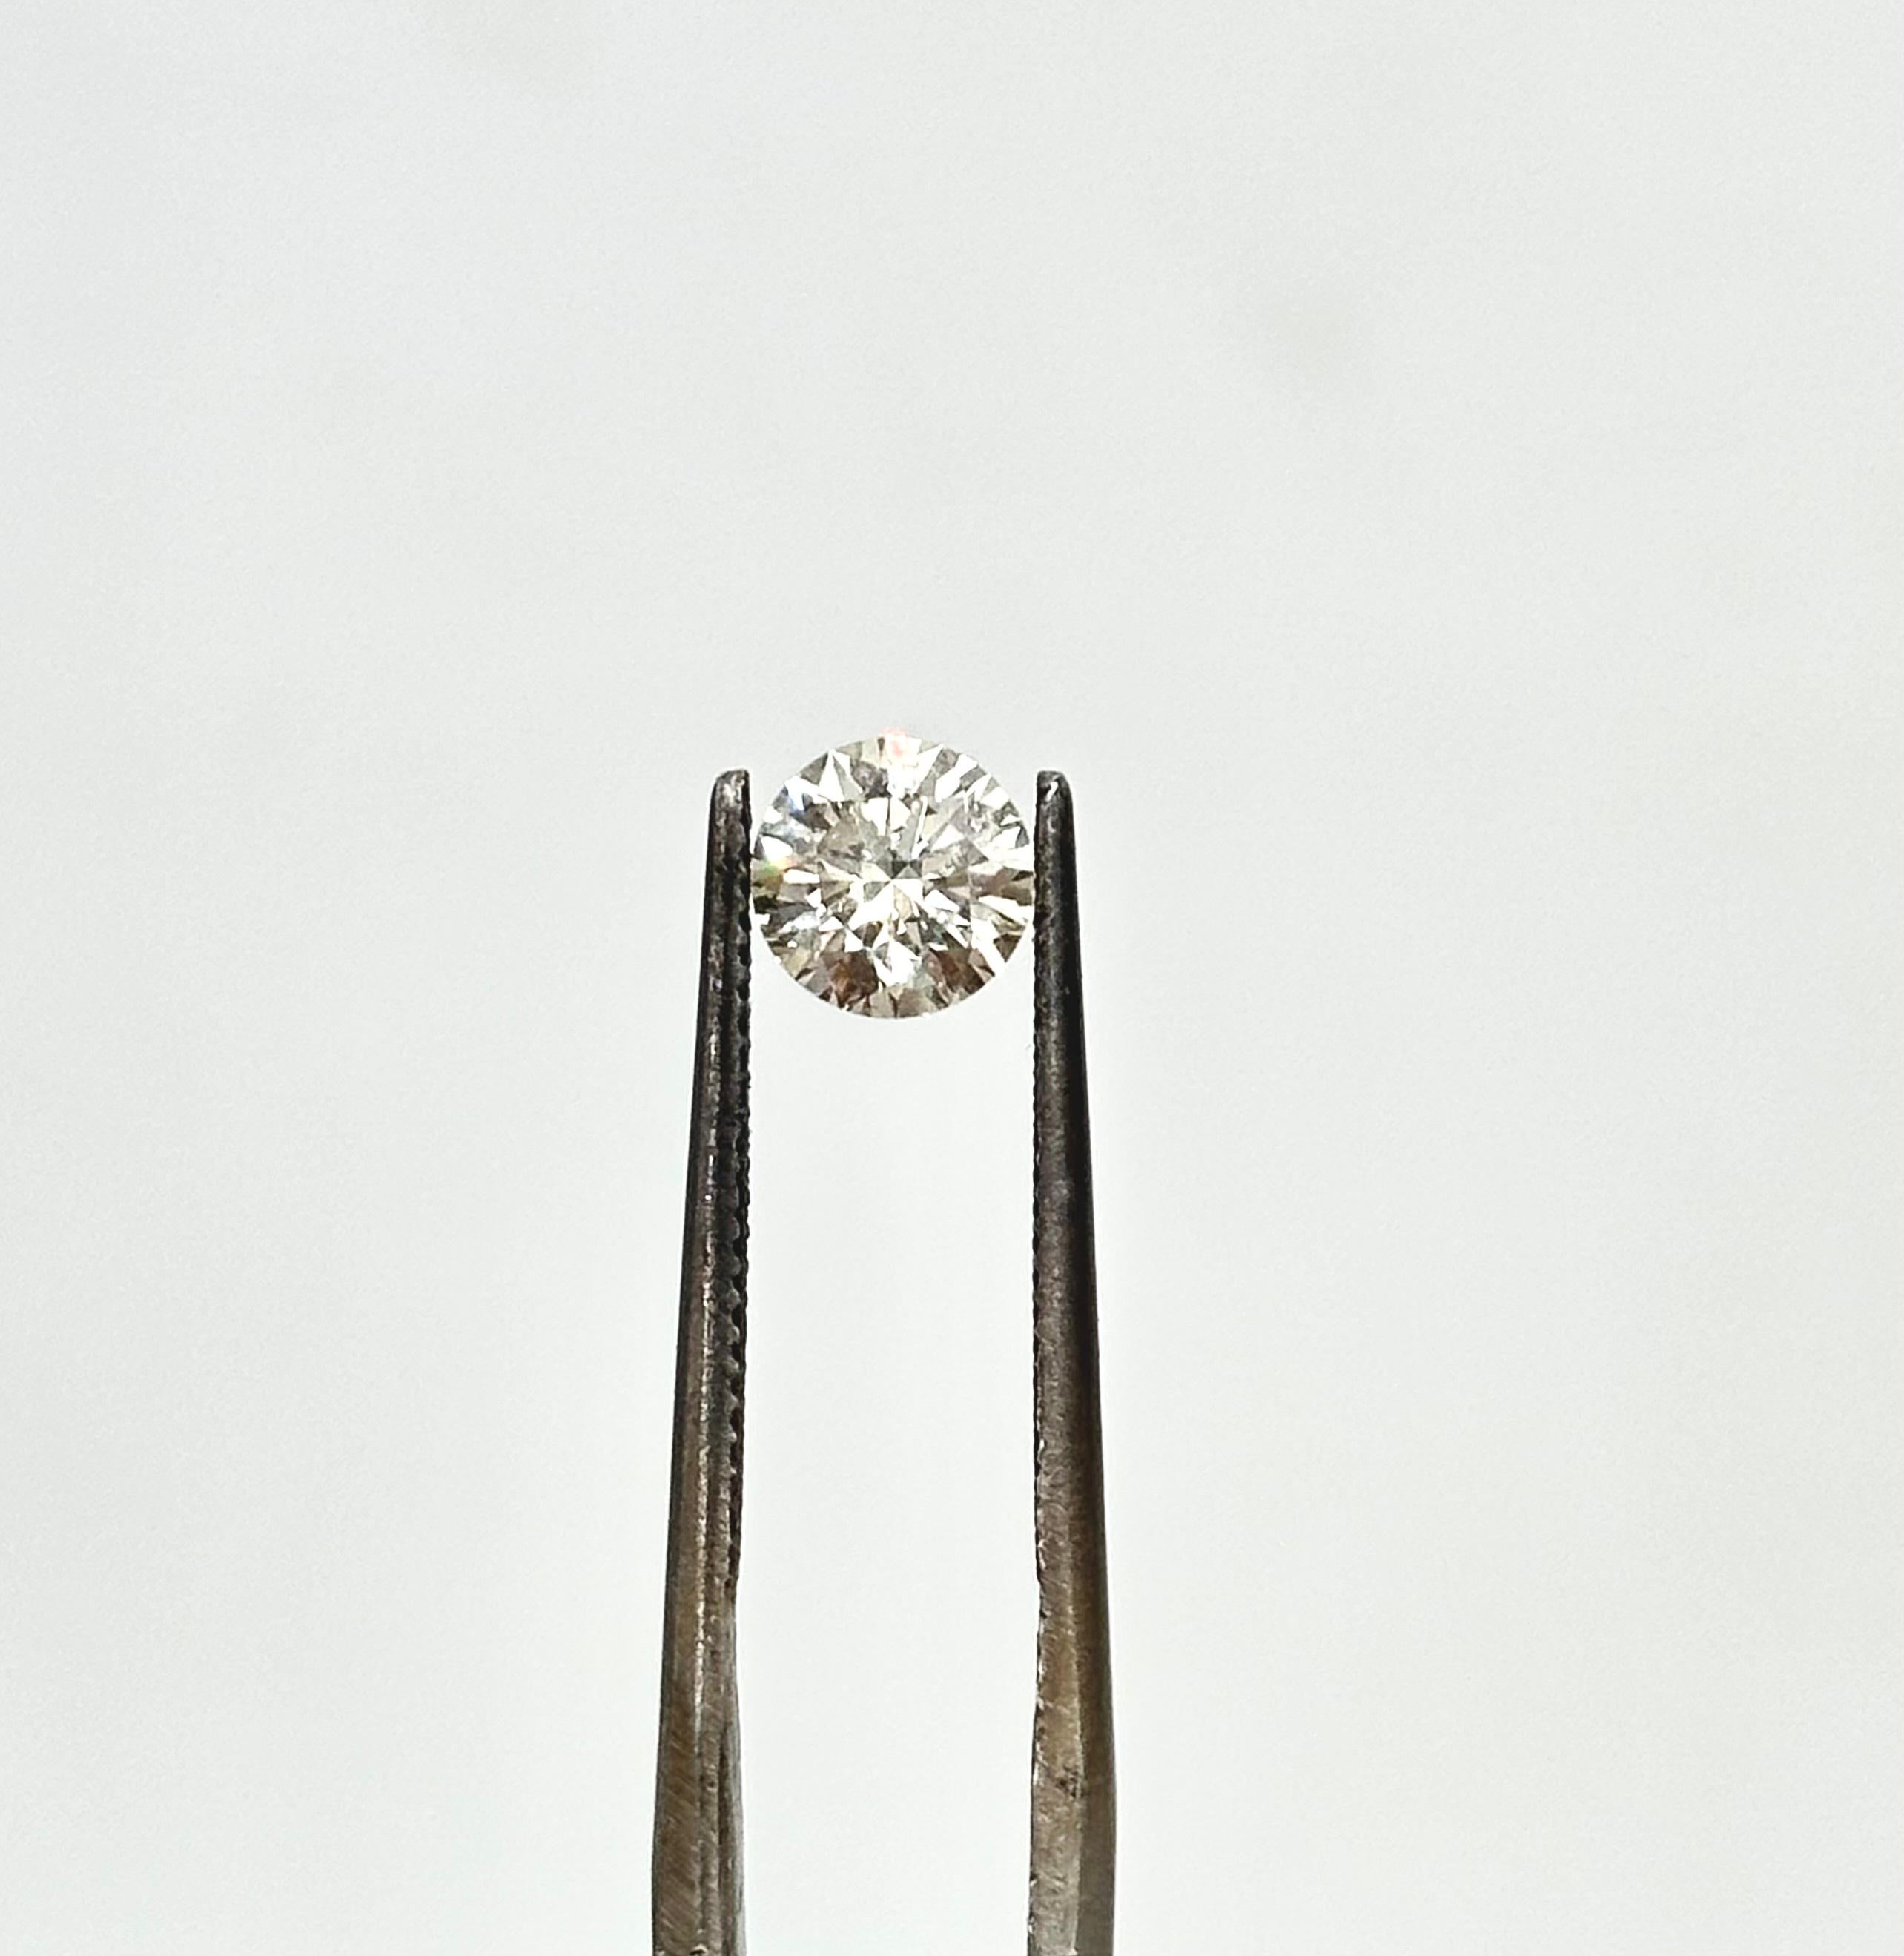 Funkelnder runder Brillant im Naturschliff von 1,11 Karat J VS mit sehr gutem Schliff. Dieser Diamant wird mit Laborzertifikat geliefert.
